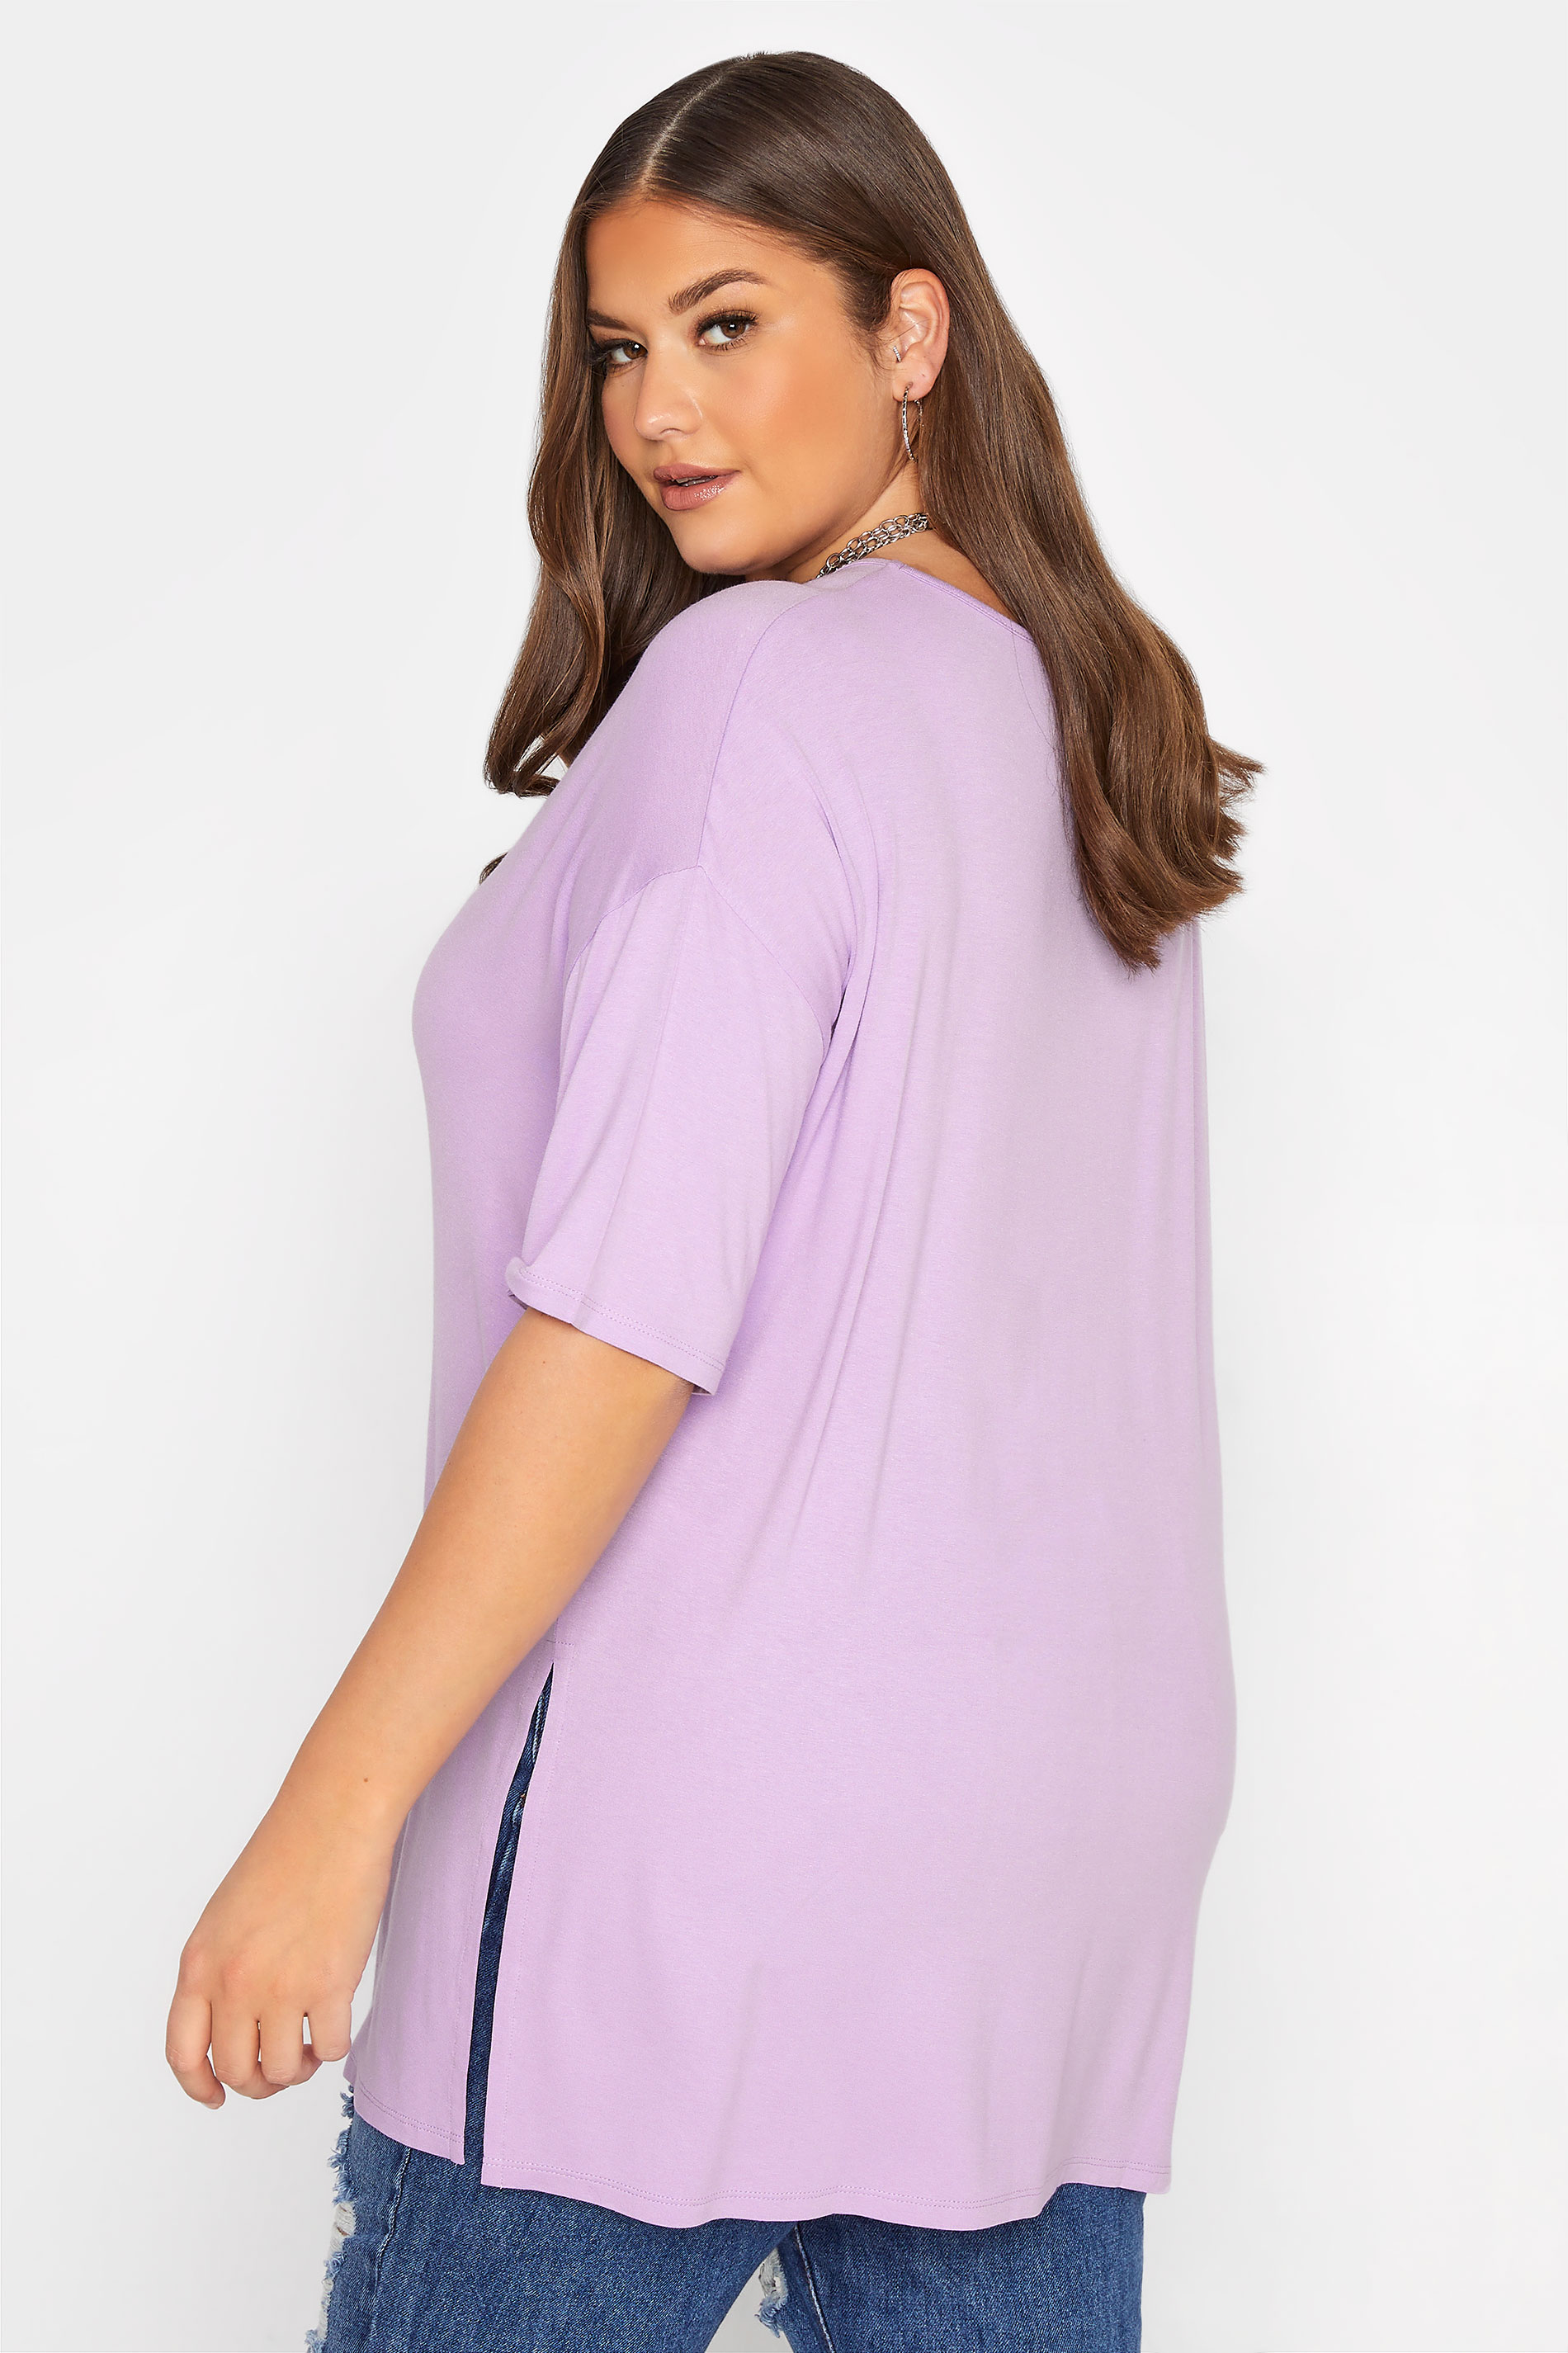 WOMEN FASHION Shirts & T-shirts Shirt Casual ONLY Shirt discount 57% Pink 36                  EU 